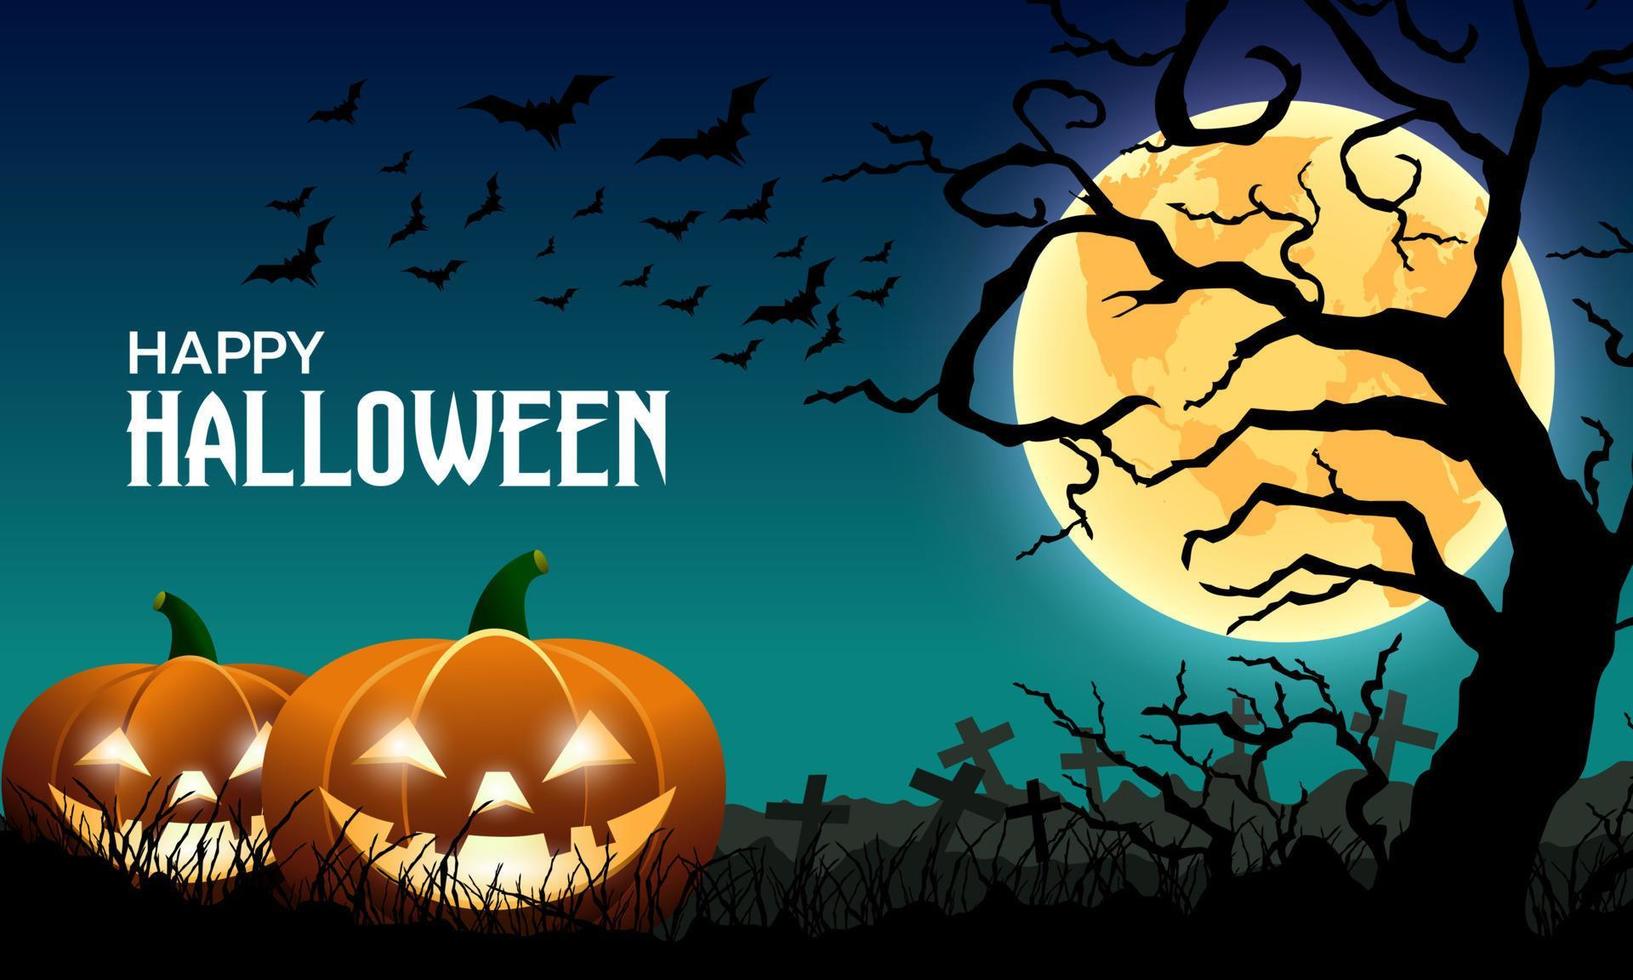 happy halloween dunkle nacht hintergrund vollmond mit kürbis, friedhof, bäumen und fliegenden bats.vector illustration. vektor